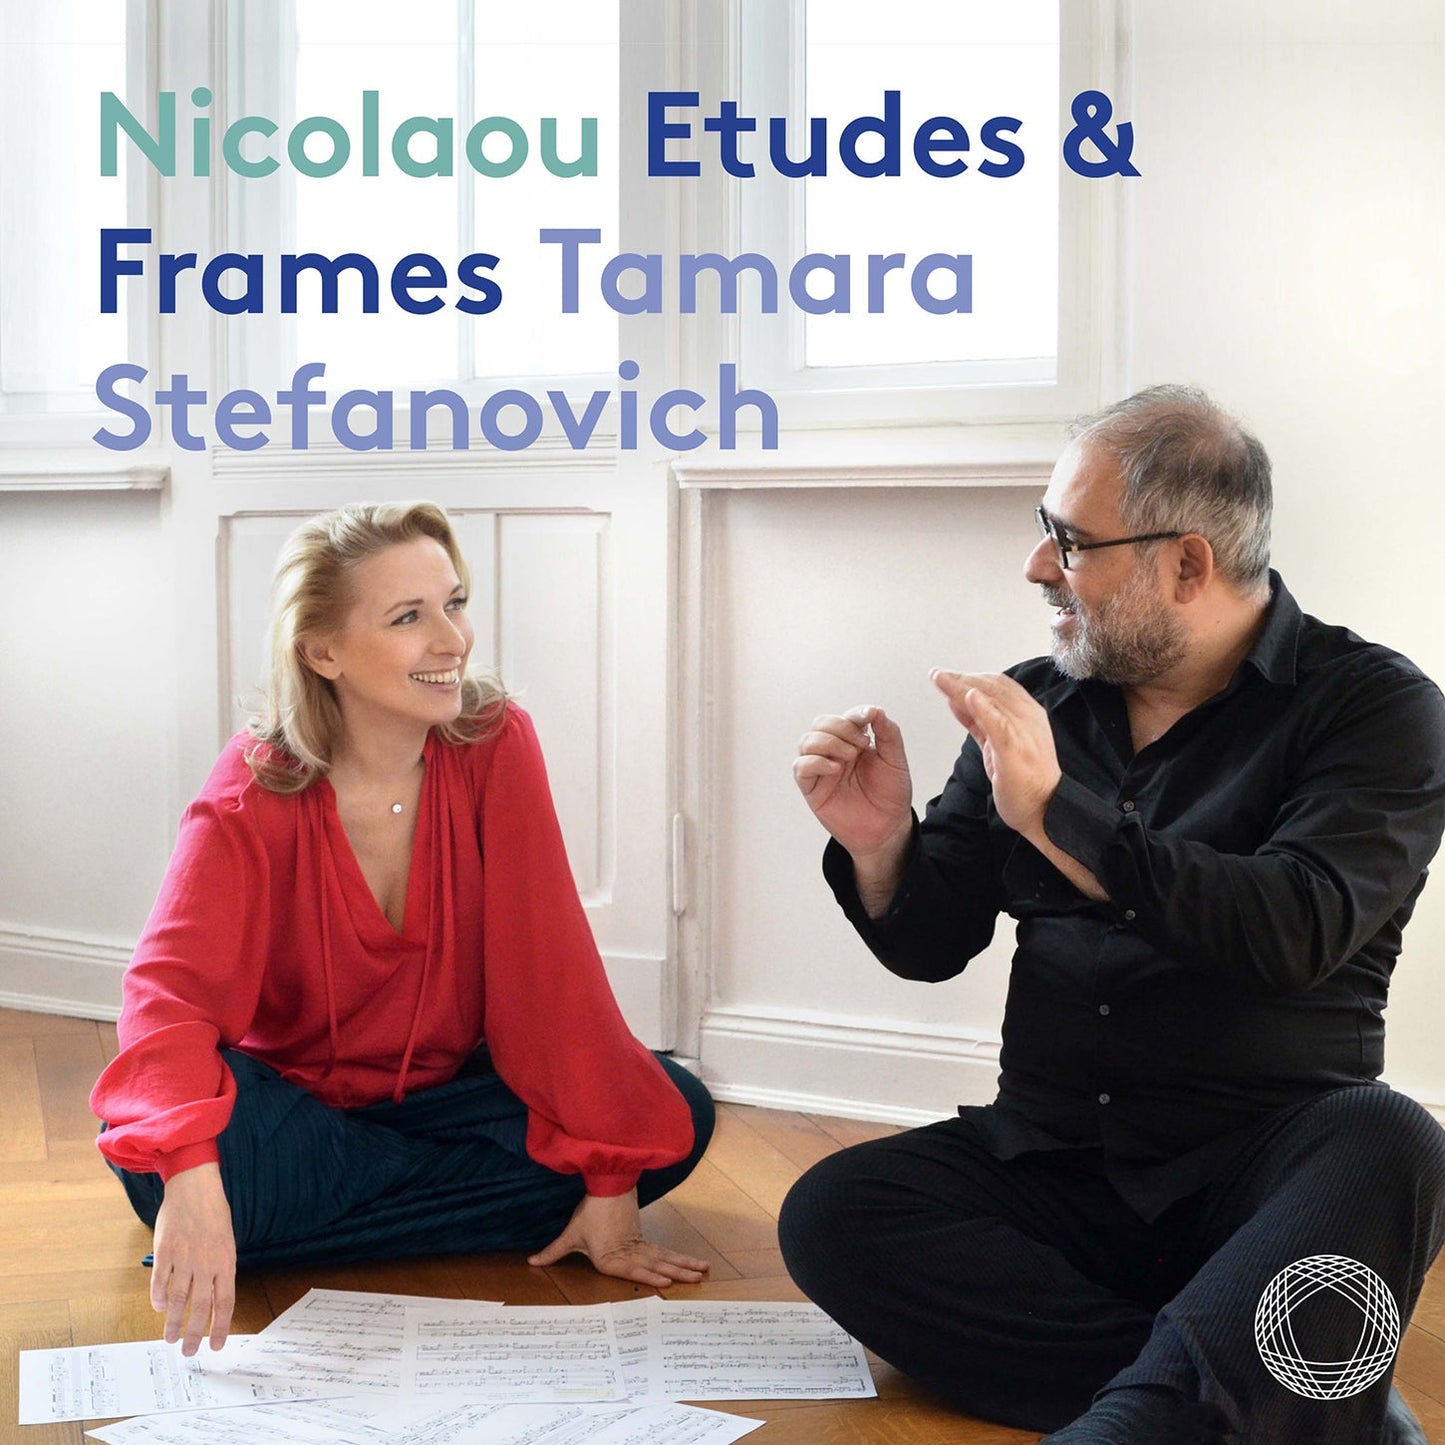 Nicolaou: Etudes & Frames